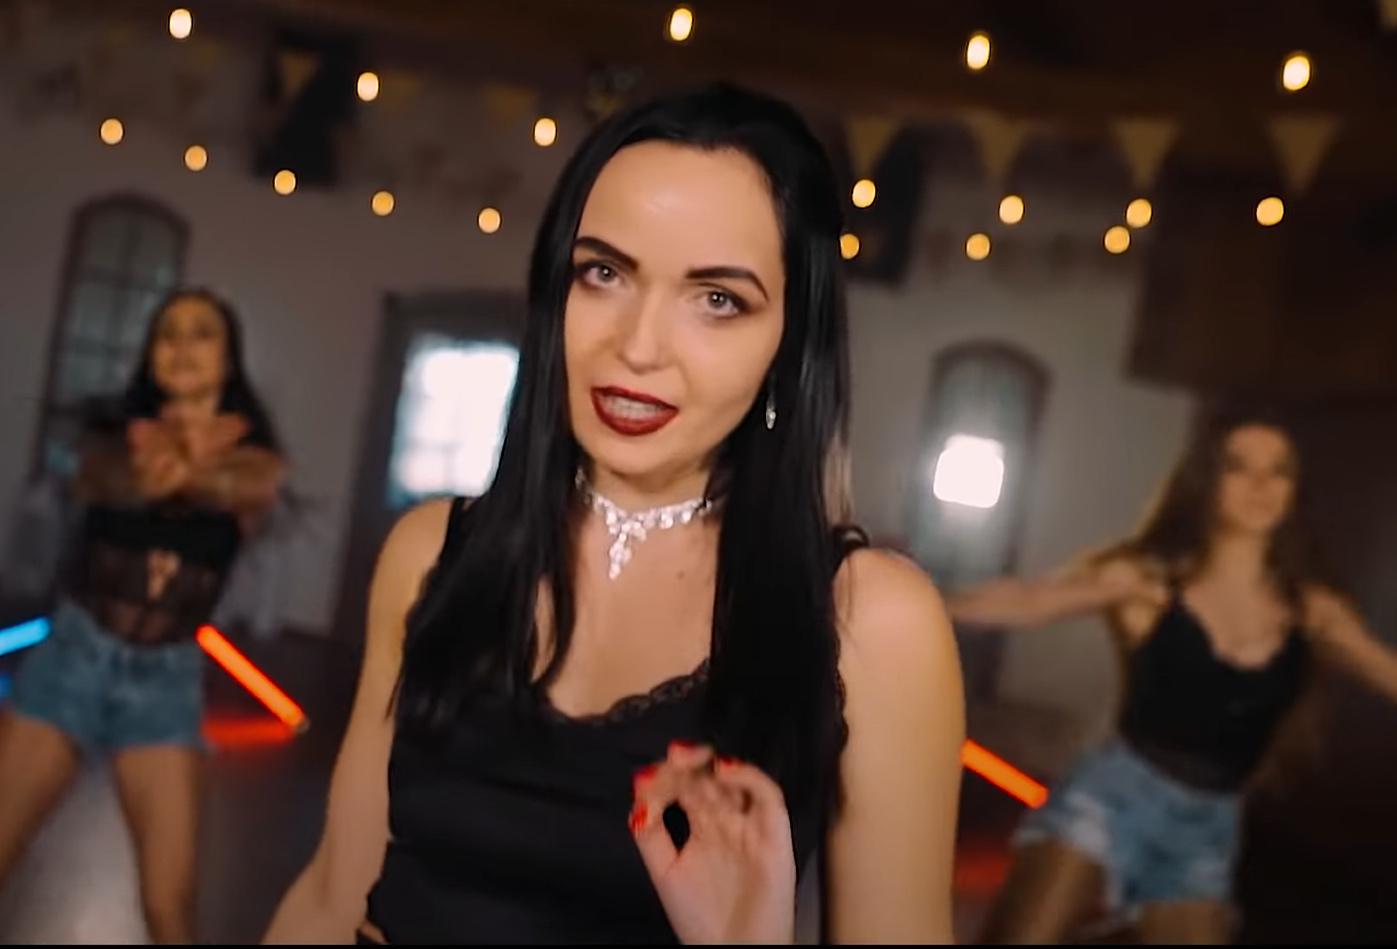 Nowa postać w świecie disco polo! Karolina Kołpacka rusza na podbój rynku przebojem 